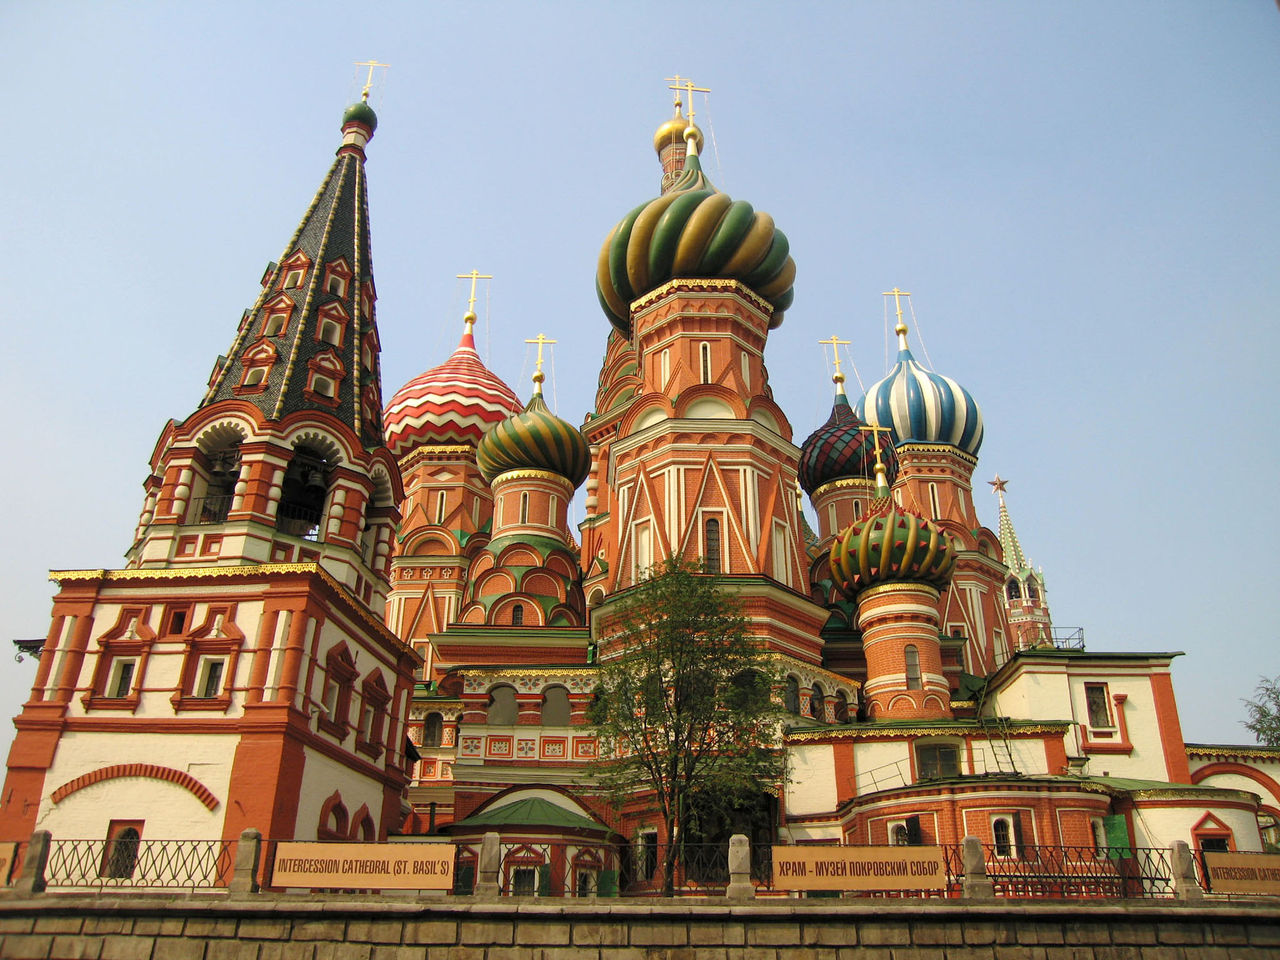 グレートライフ ロシアにある大聖堂が まさに メルヘンの国のタマネギ宮殿 としか思えない